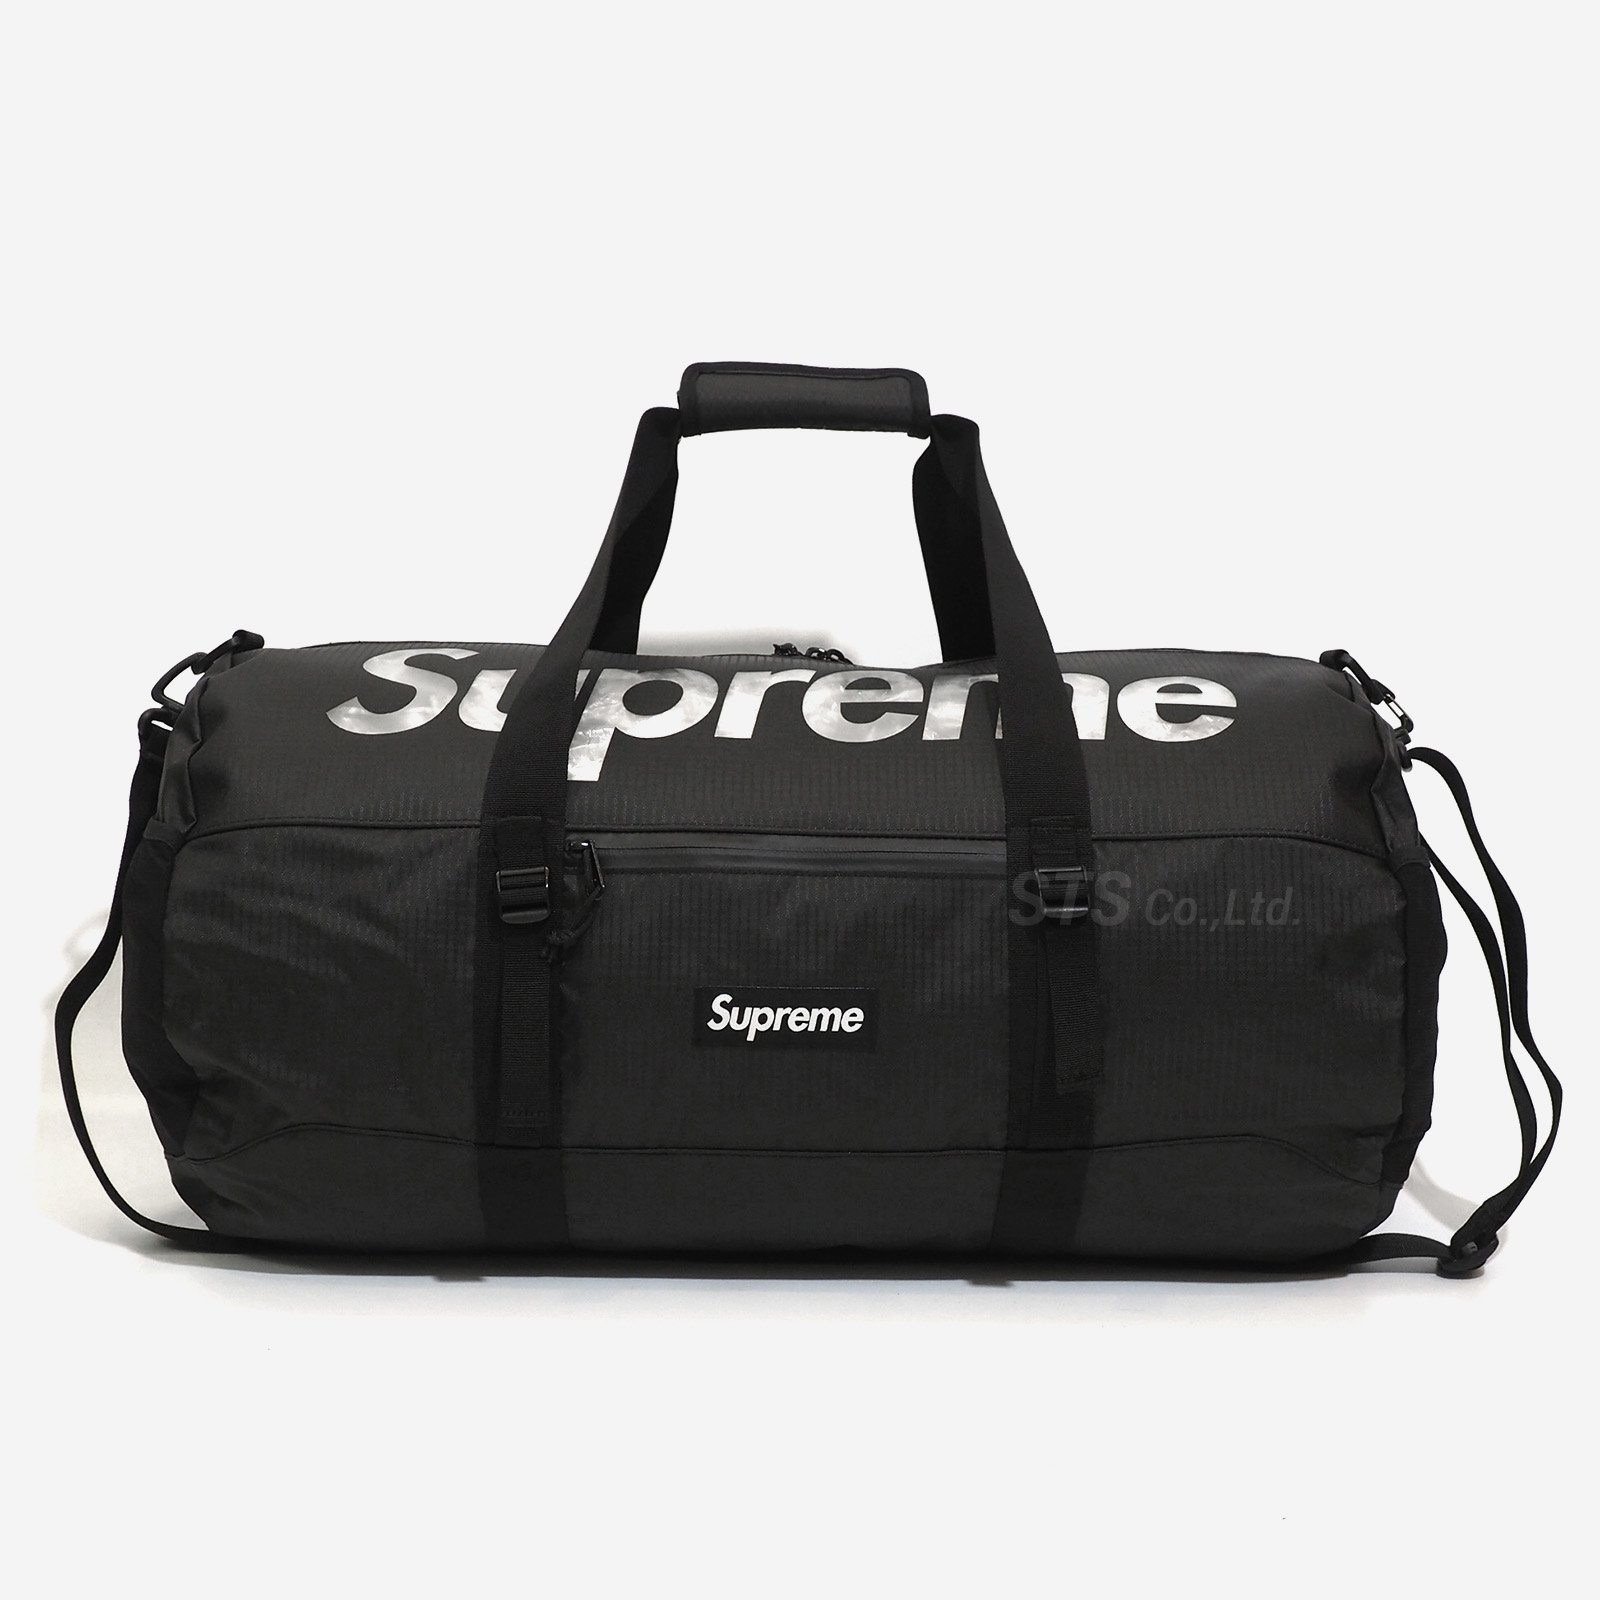 Supreme Duffle Bag ダッフルバッグ smcint.com